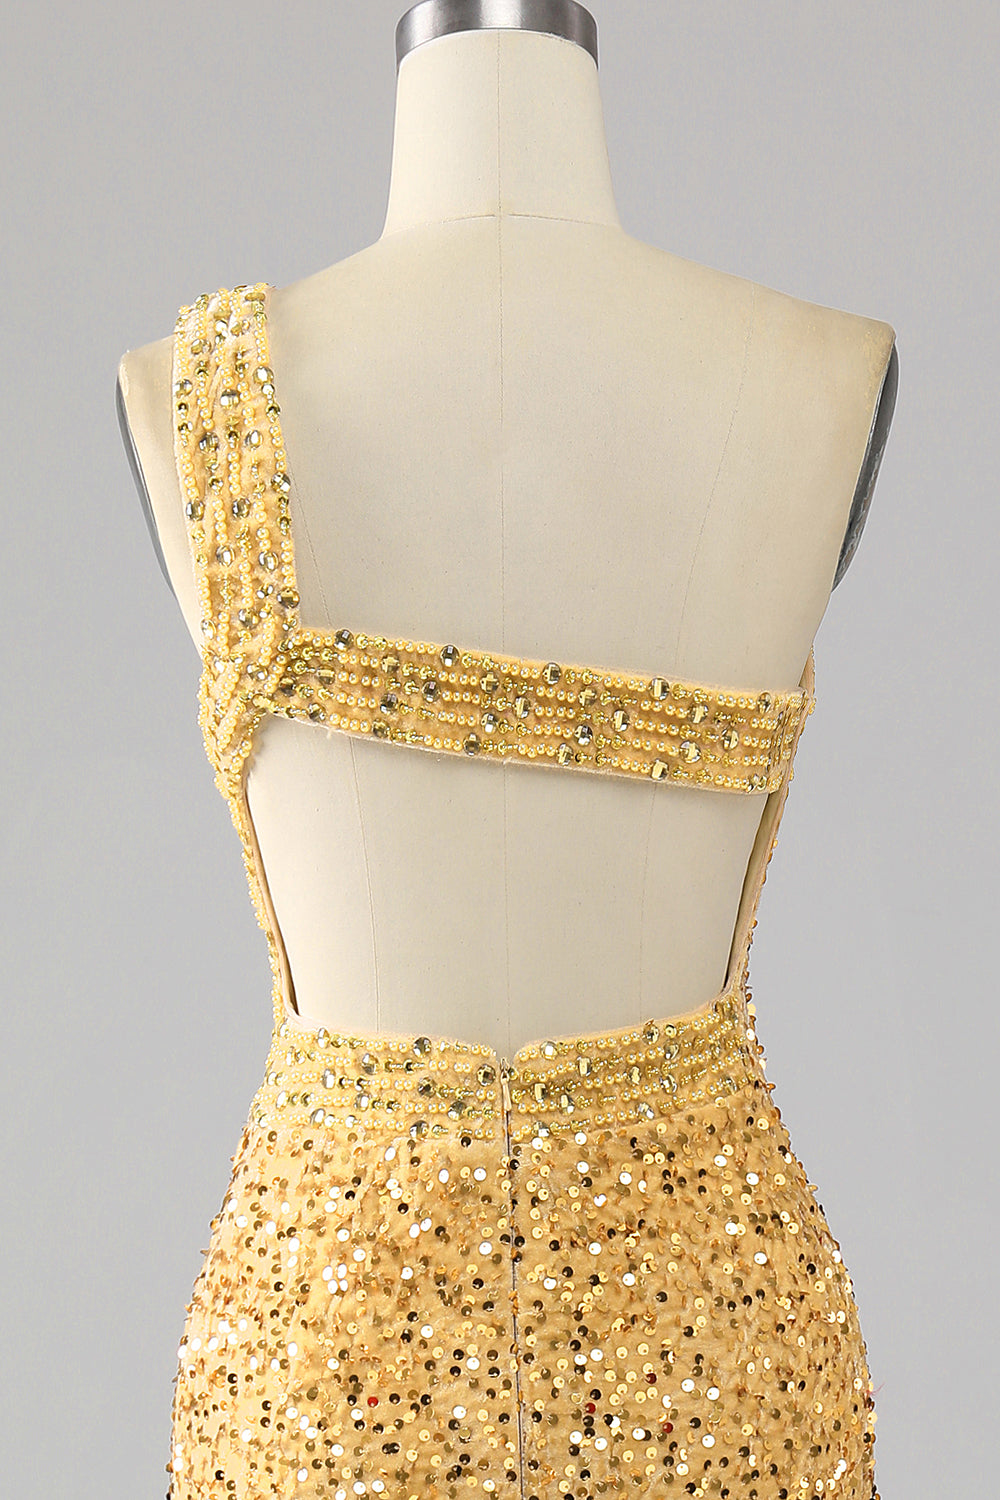 Mermaid Sequins One Shoulder Golden Prom Dress with Slit